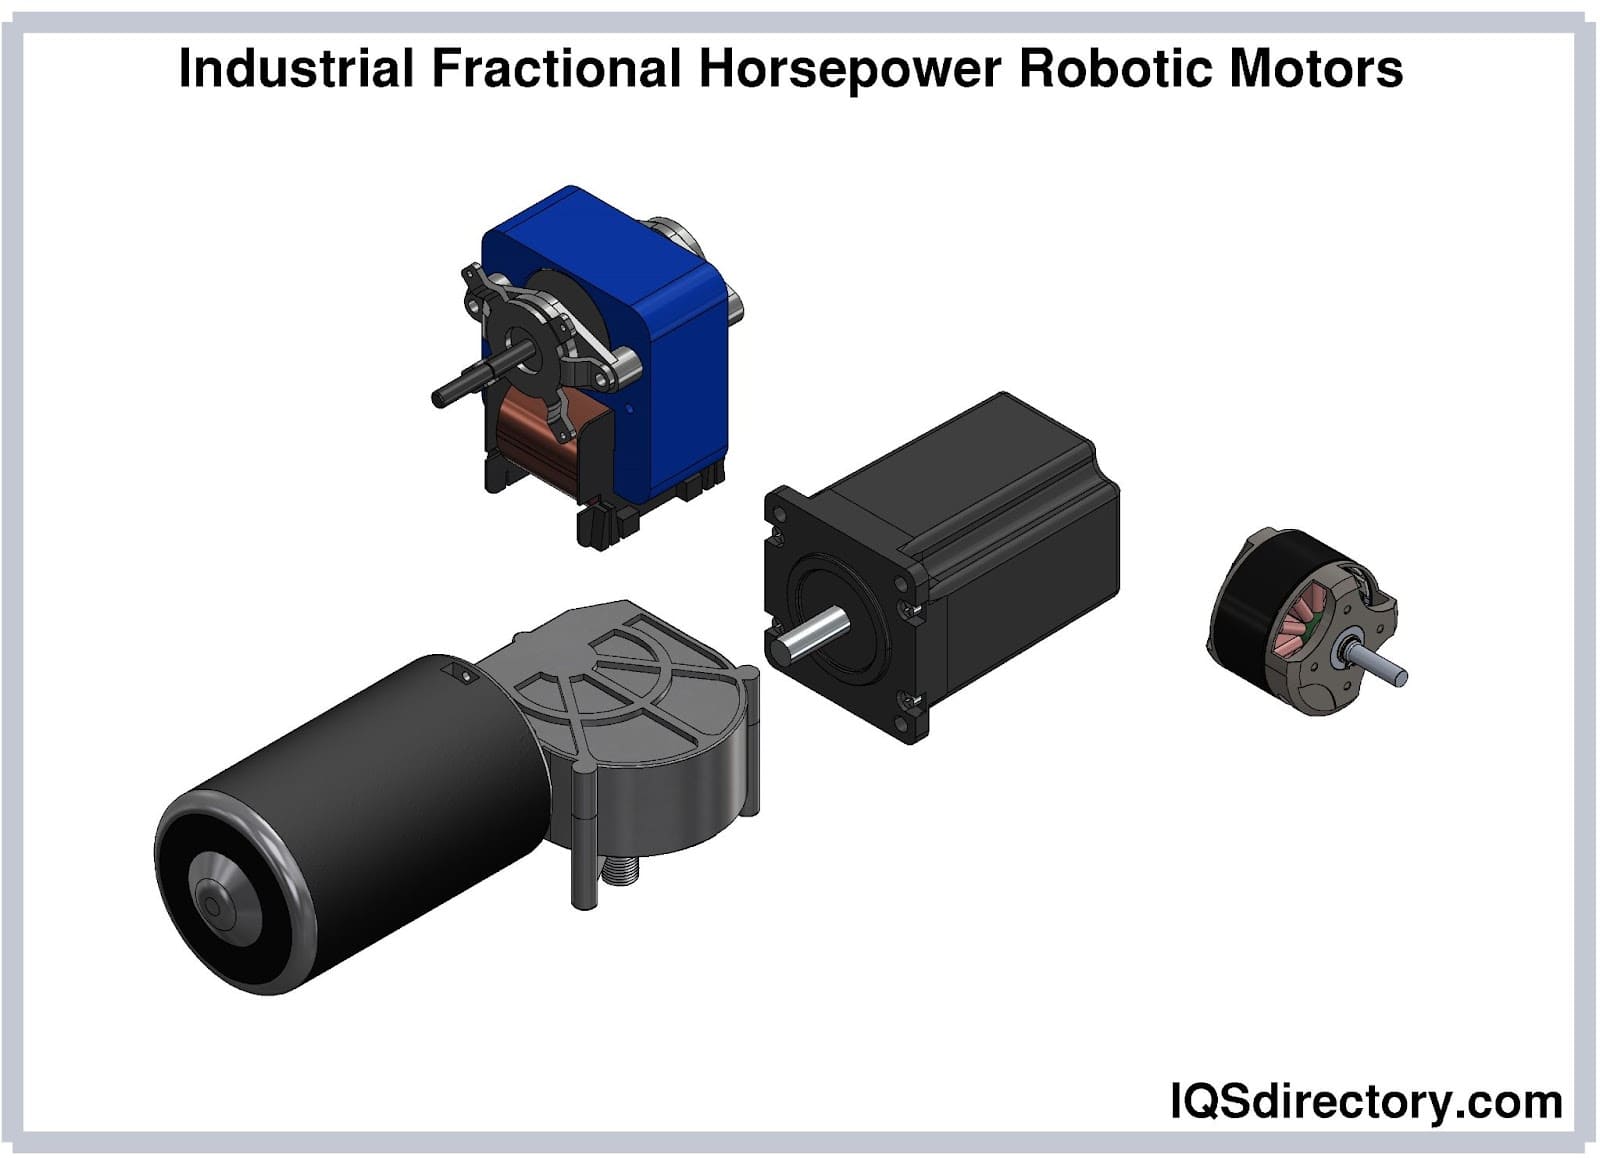 Industrial Fractional Horsepower Robotic Motors